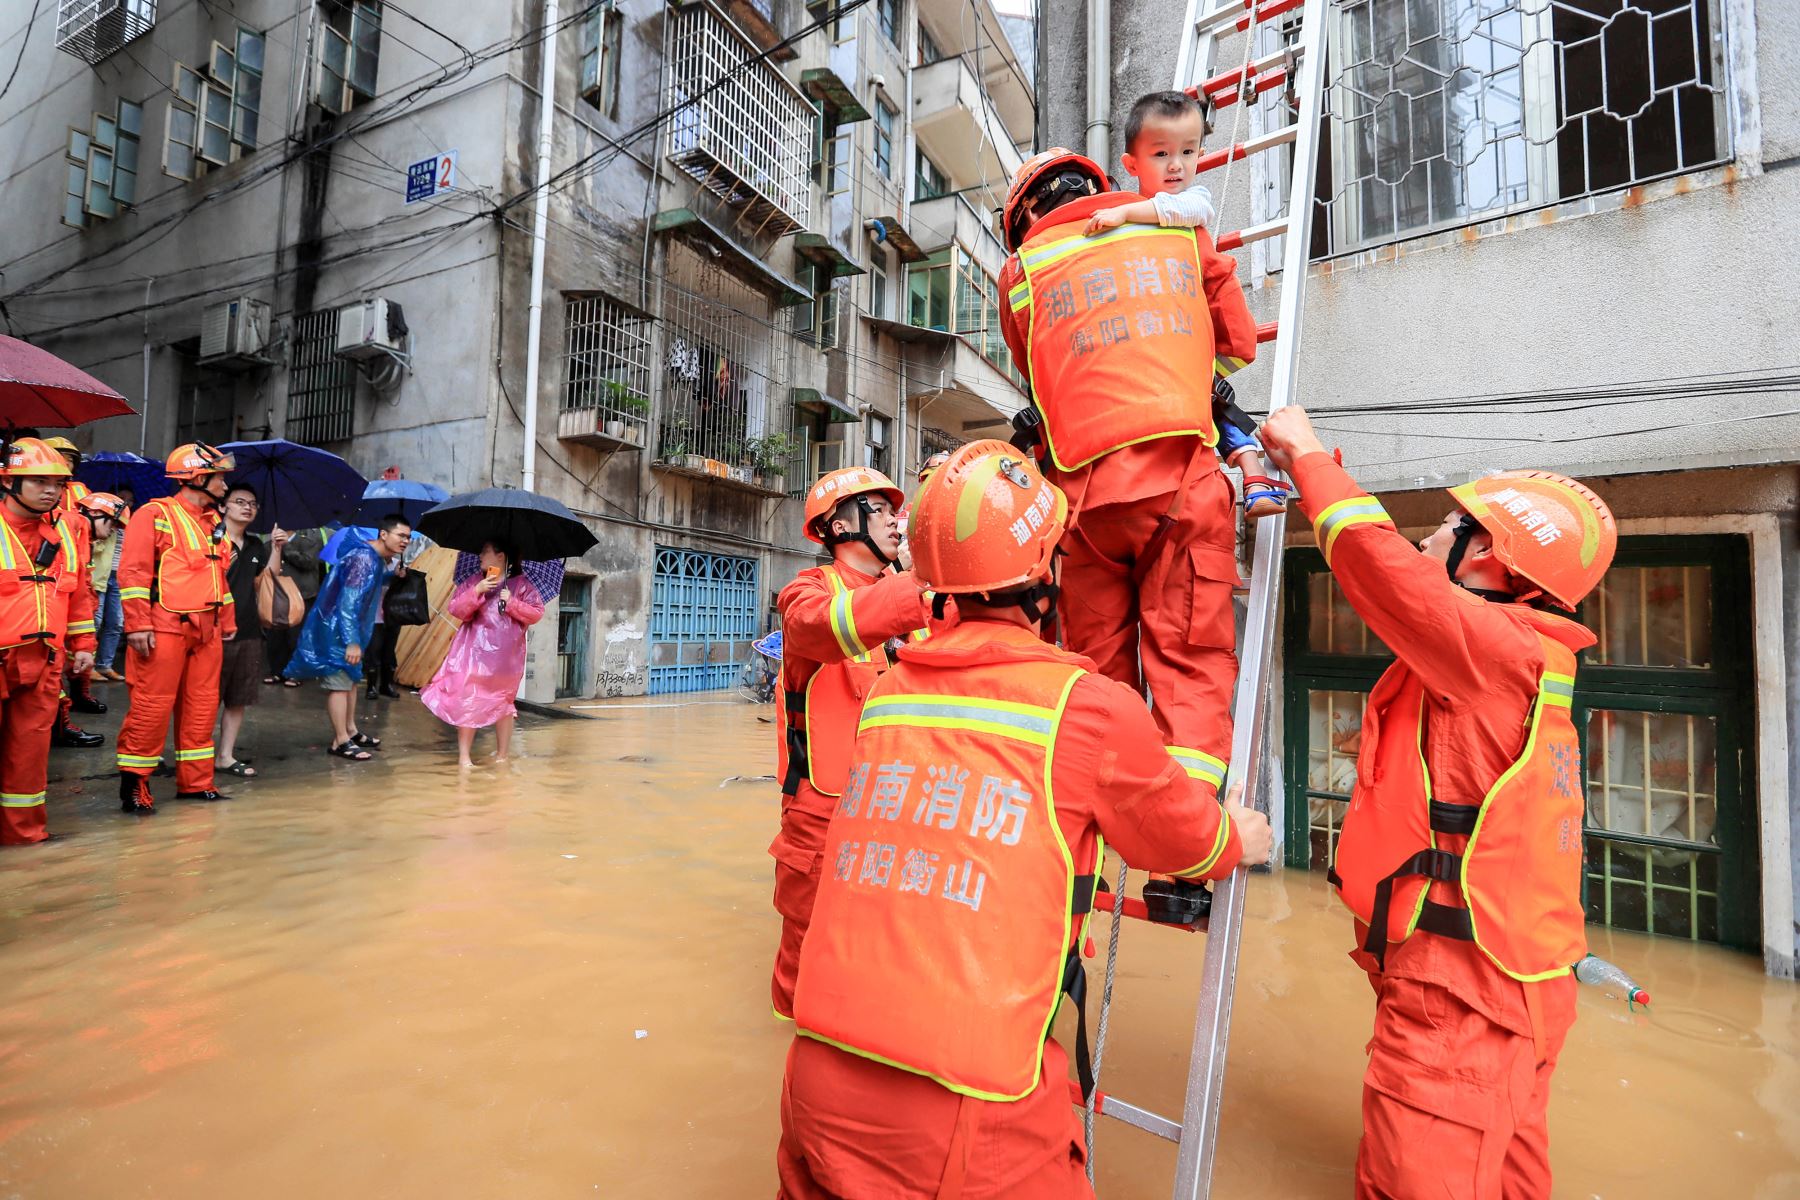 Rescatistas evacuan a las personas de un área inundada después de fuertes lluvias en Hengyang, en la provincia central de Hunan, China. Foto: AFP